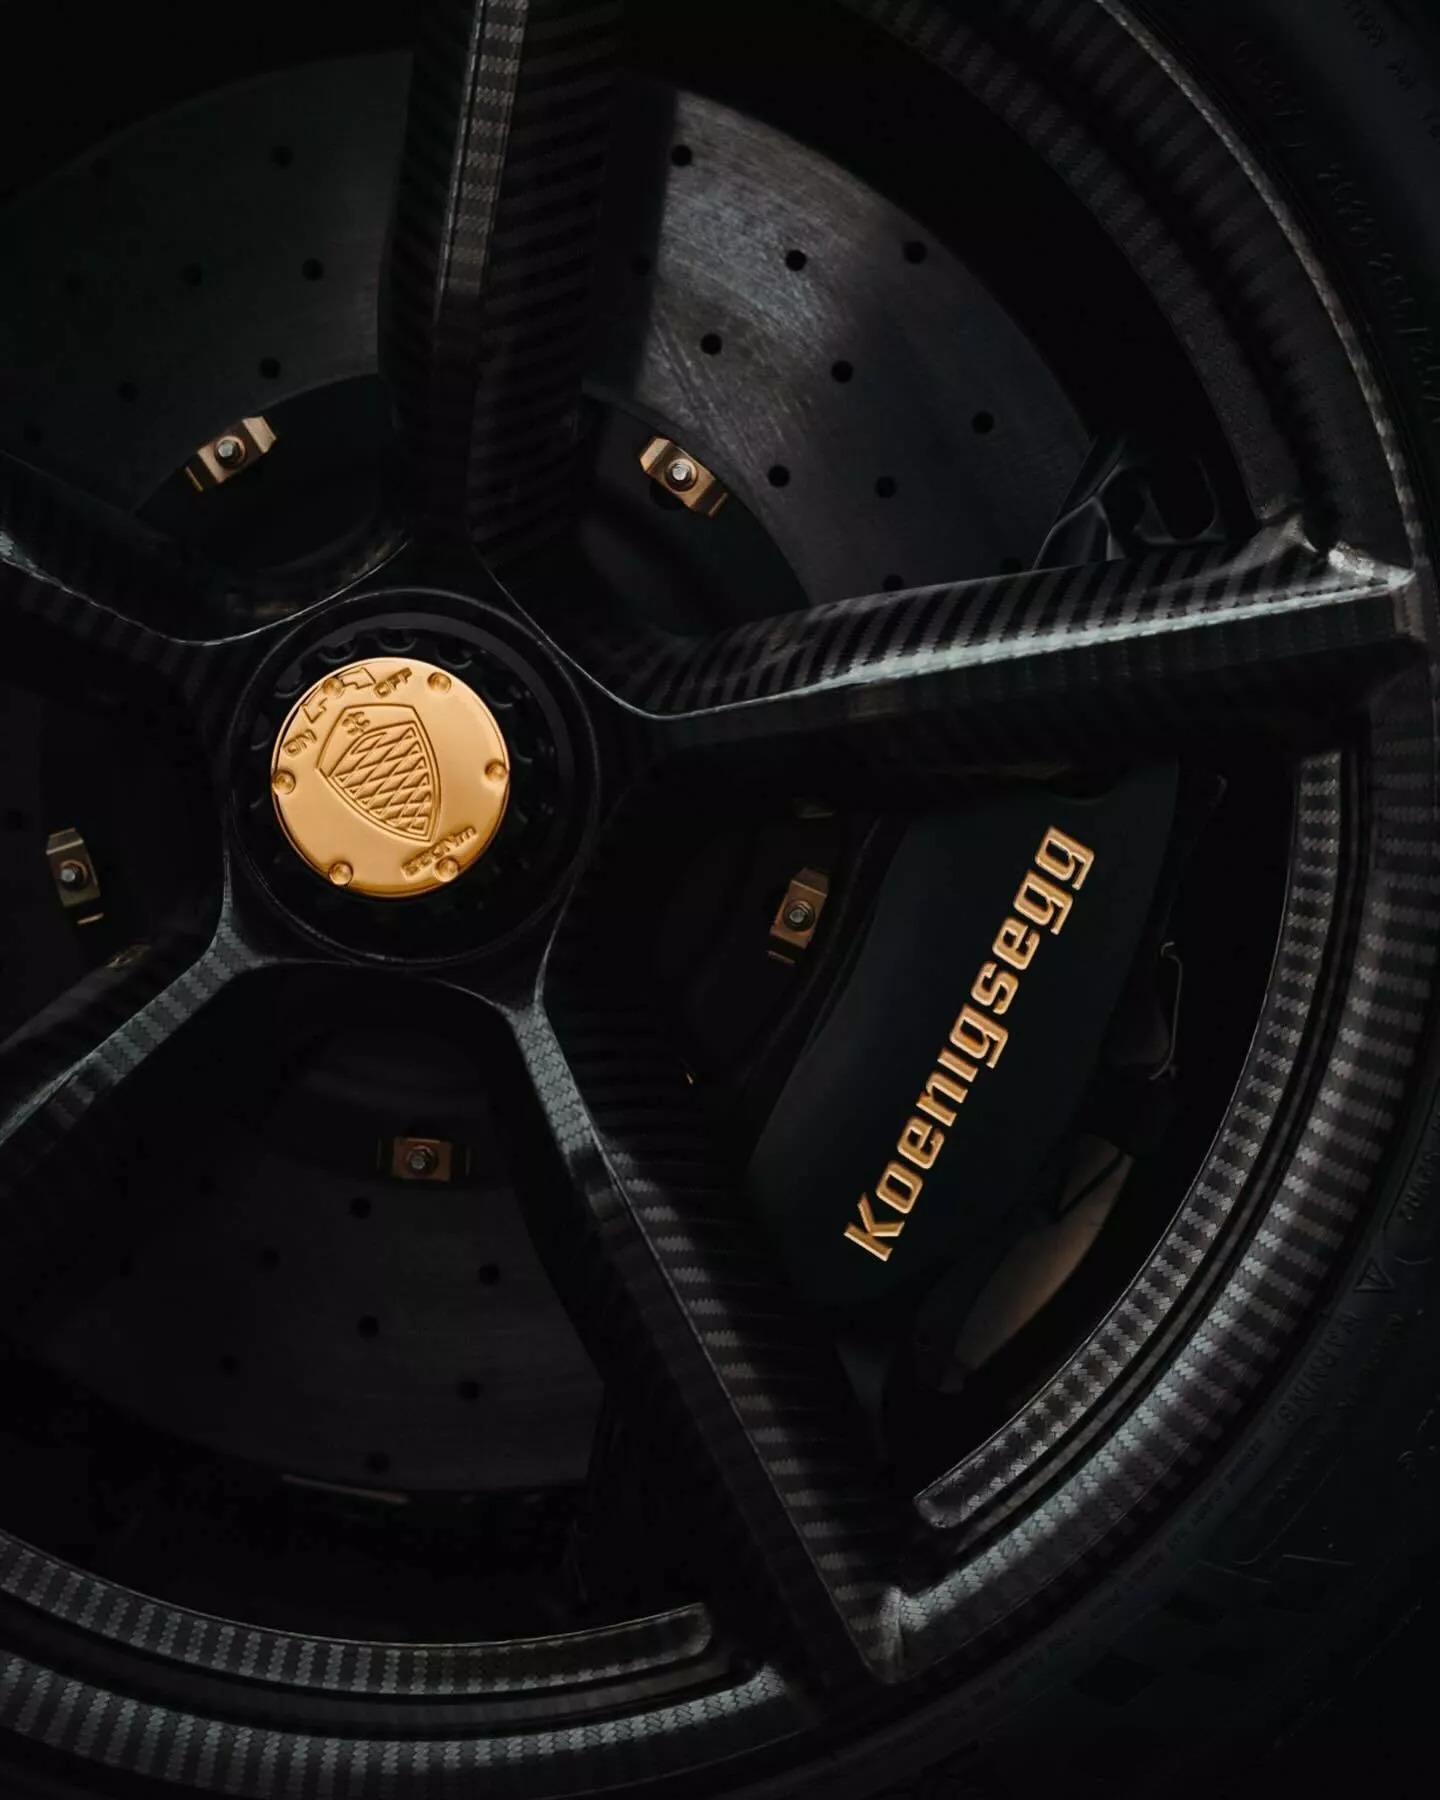 Đại gia bất động sản chơi siêu xe Koenigsegg khác người: Rắc bột vàng lên khắp vỏ carbon, mạ vàng 24k nhiều chi tiết ngoại thất